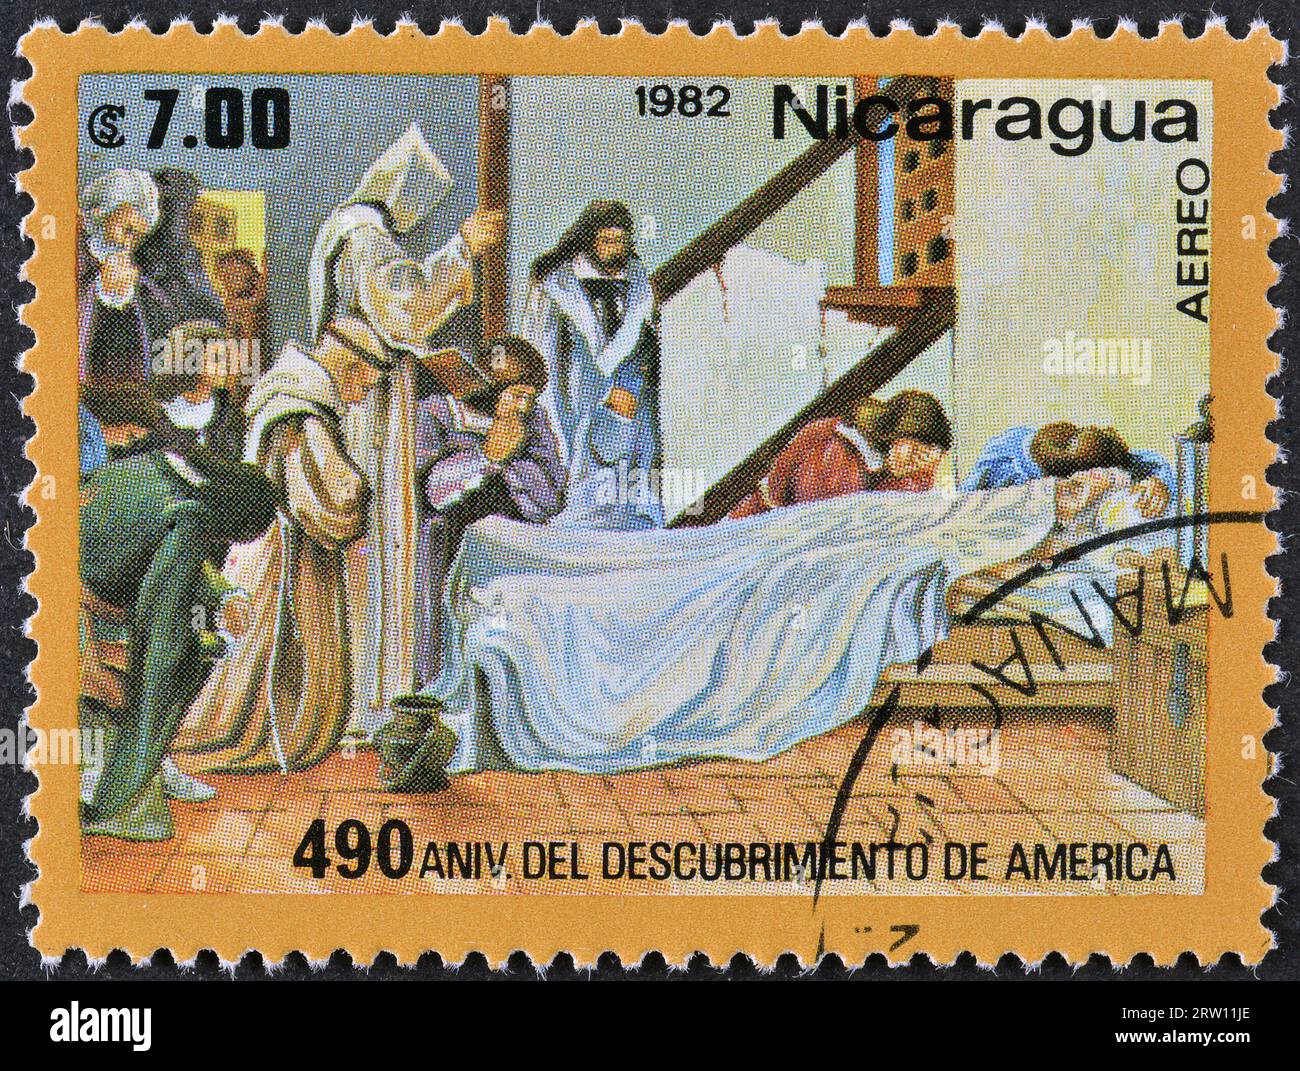 Von Nicaragua gedruckte Stempelmarke, die den Tod von Columbus, Discovery of America, 490 Jahrestag, um 1982 zeigt. Stockfoto